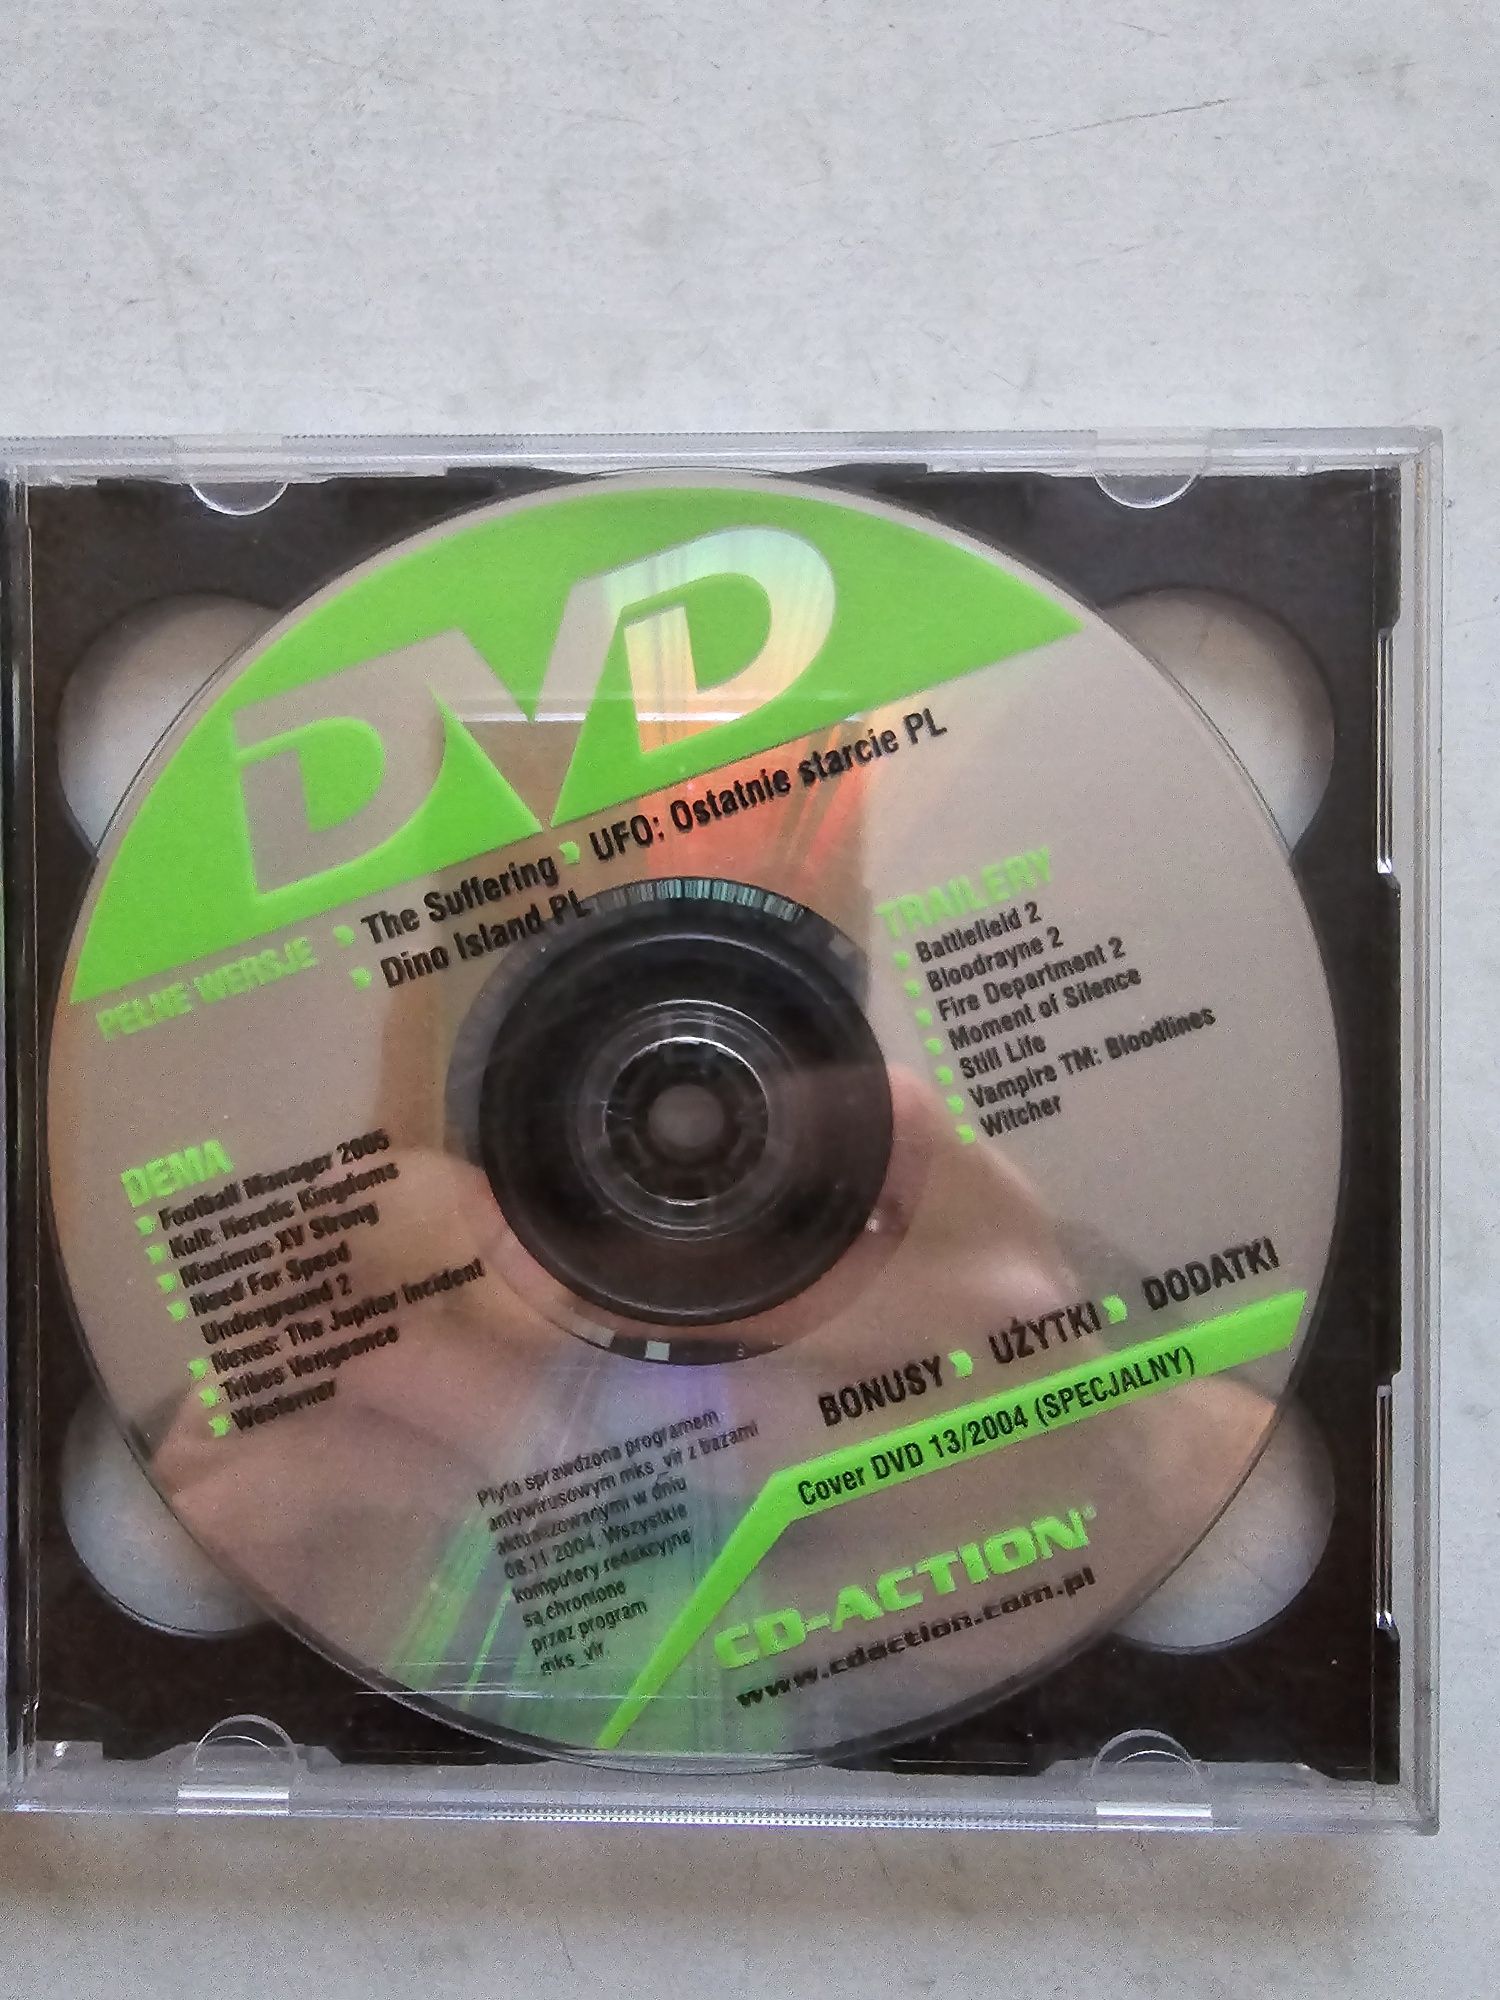 The Suffering UFO Ostatnie starcie i Dini Island CD Action 13/2004